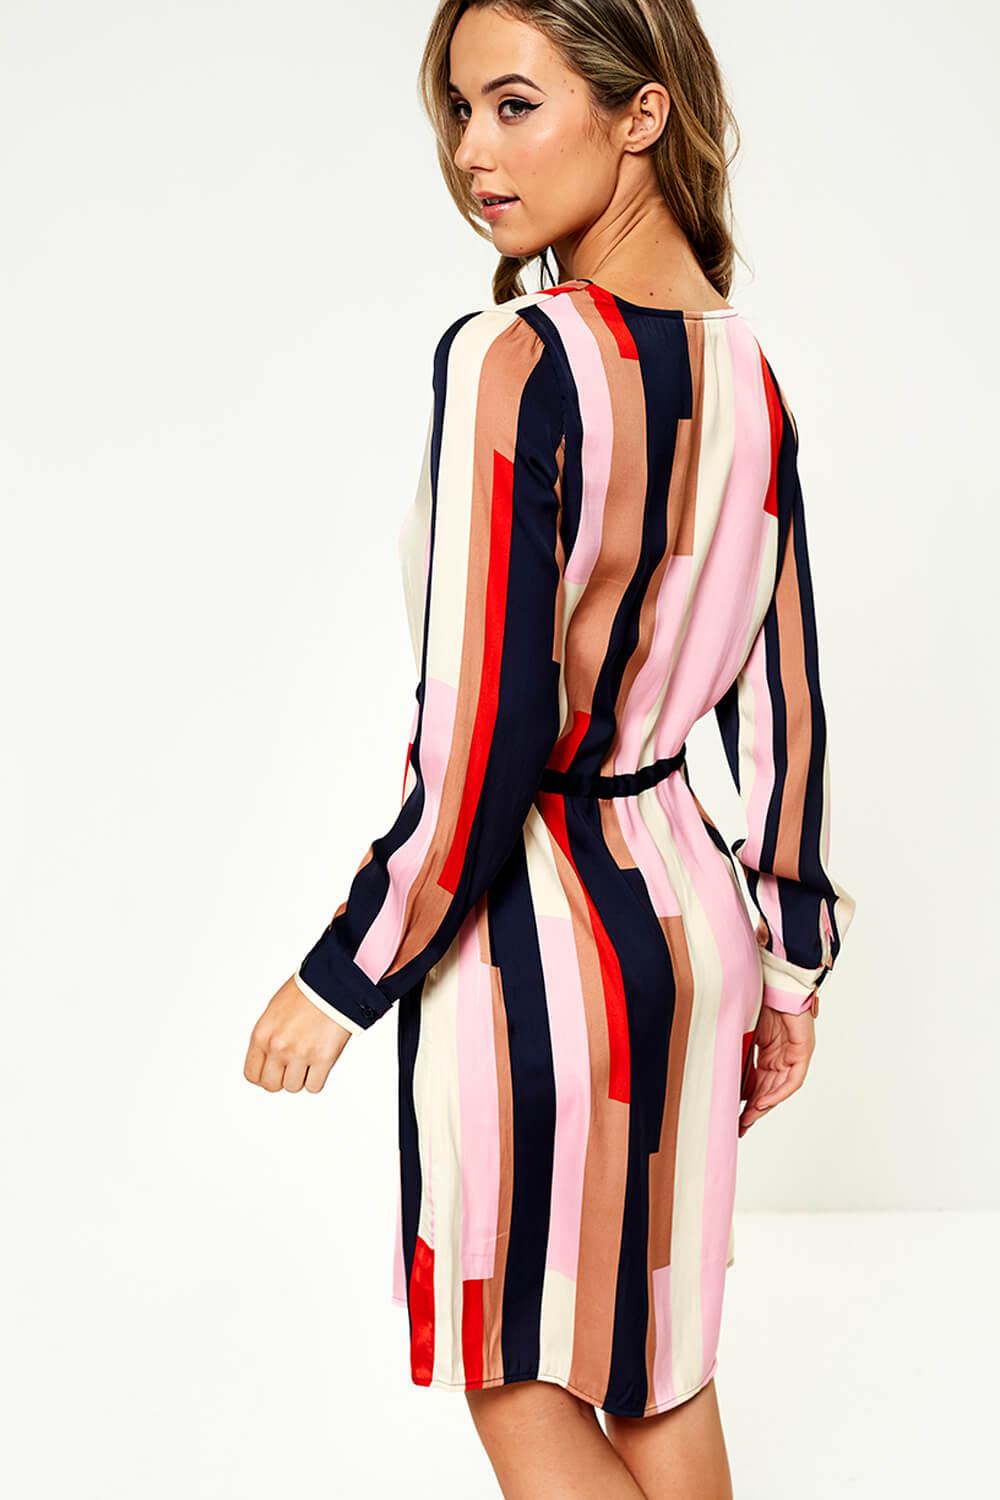 Moda Matilda Dress in Stripe | iCLOTHING - iCLOTHING